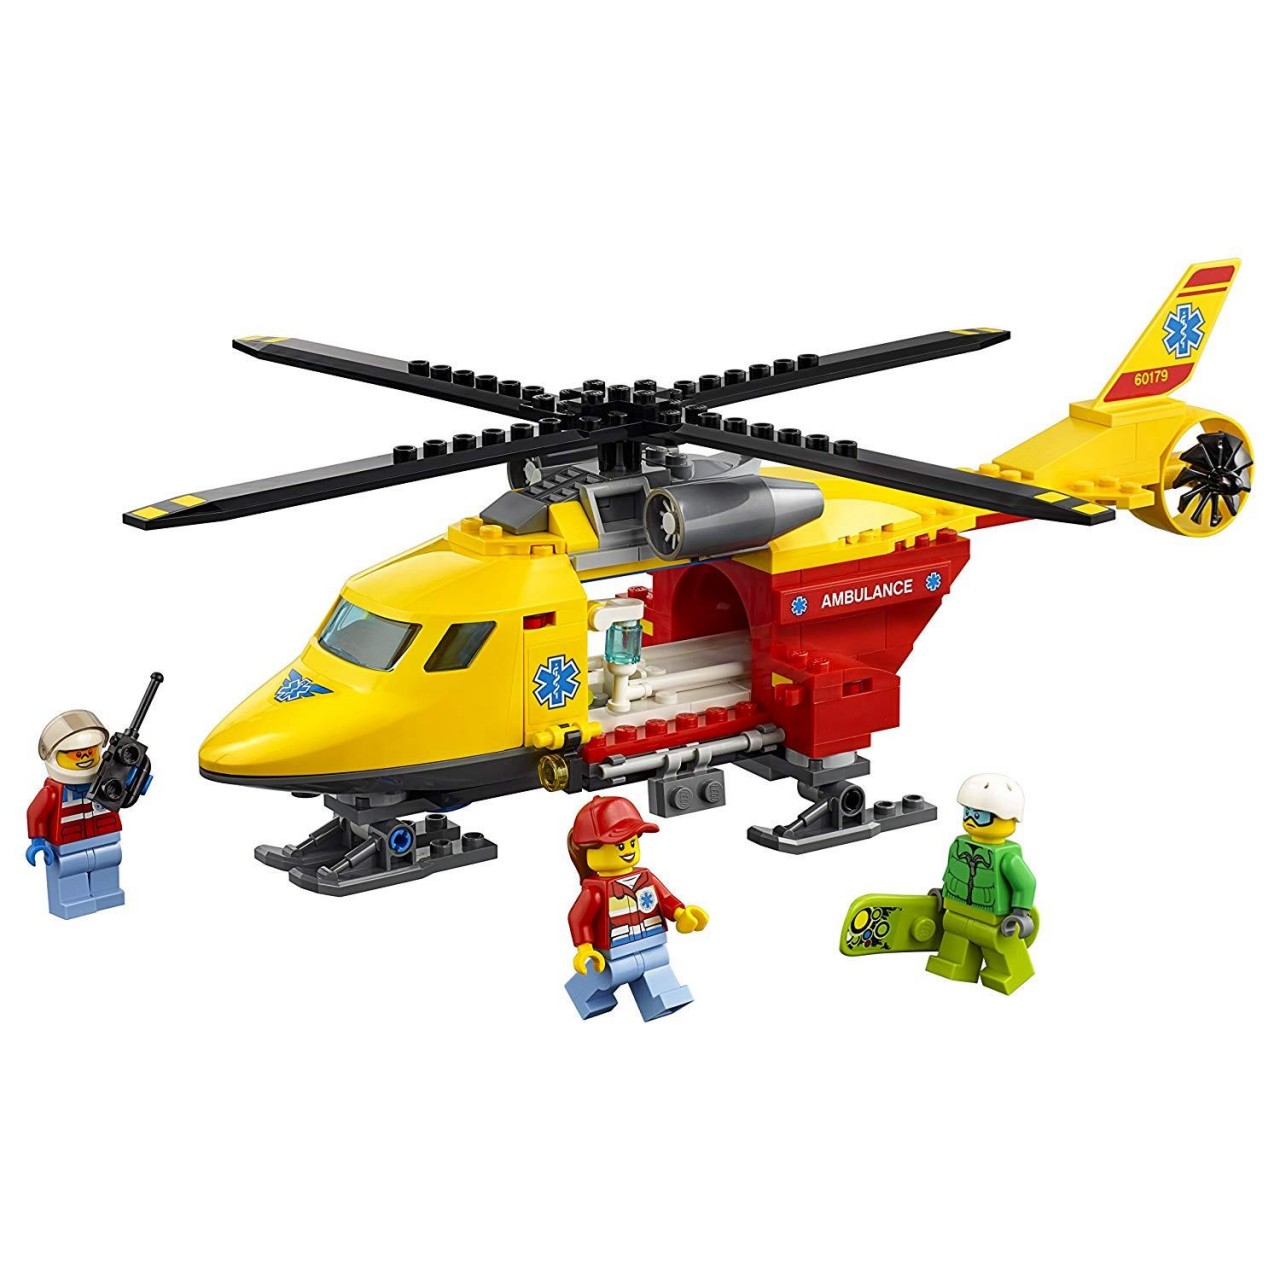 LEGO CITY 60179 Rettungshubschrauber